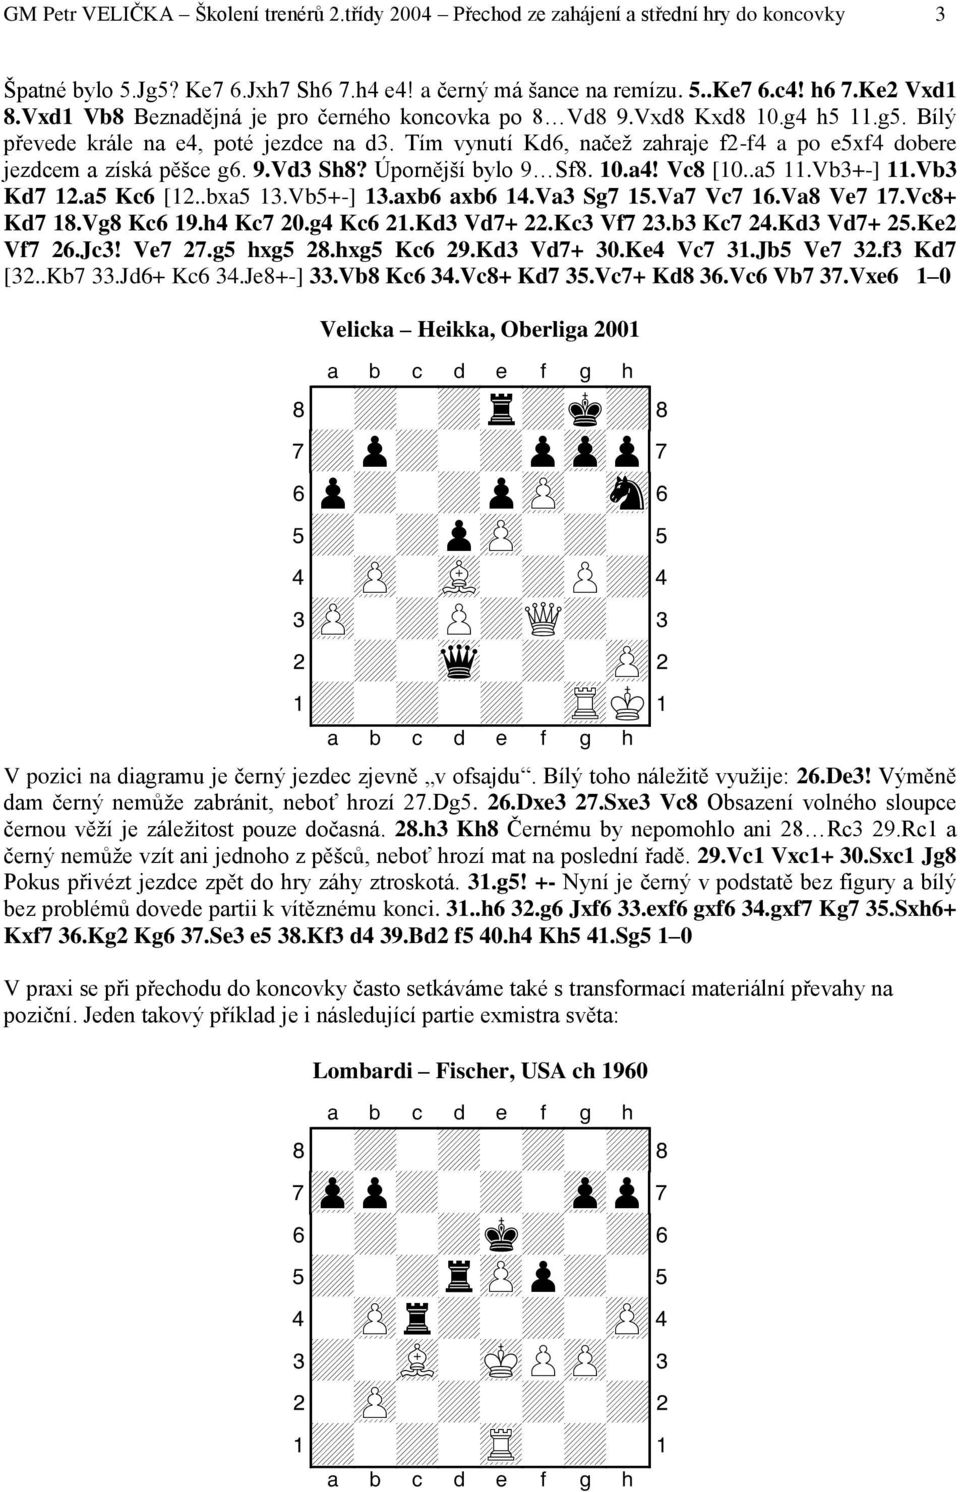 Tím vynutí Kd6, načež zahraje f2-f4 a po e5xf4 dobere jezdcem a získá pěšce g6. 9.Vd3 Sh8? Úpornější bylo 9 Sf8. 10.a4! Vc8 [10..a5 11.Vb3+-] 11.Vb3 Kd7 12.a5 Kc6 [12..bxa5 13.Vb5+-] 13.axb6 axb6 14.